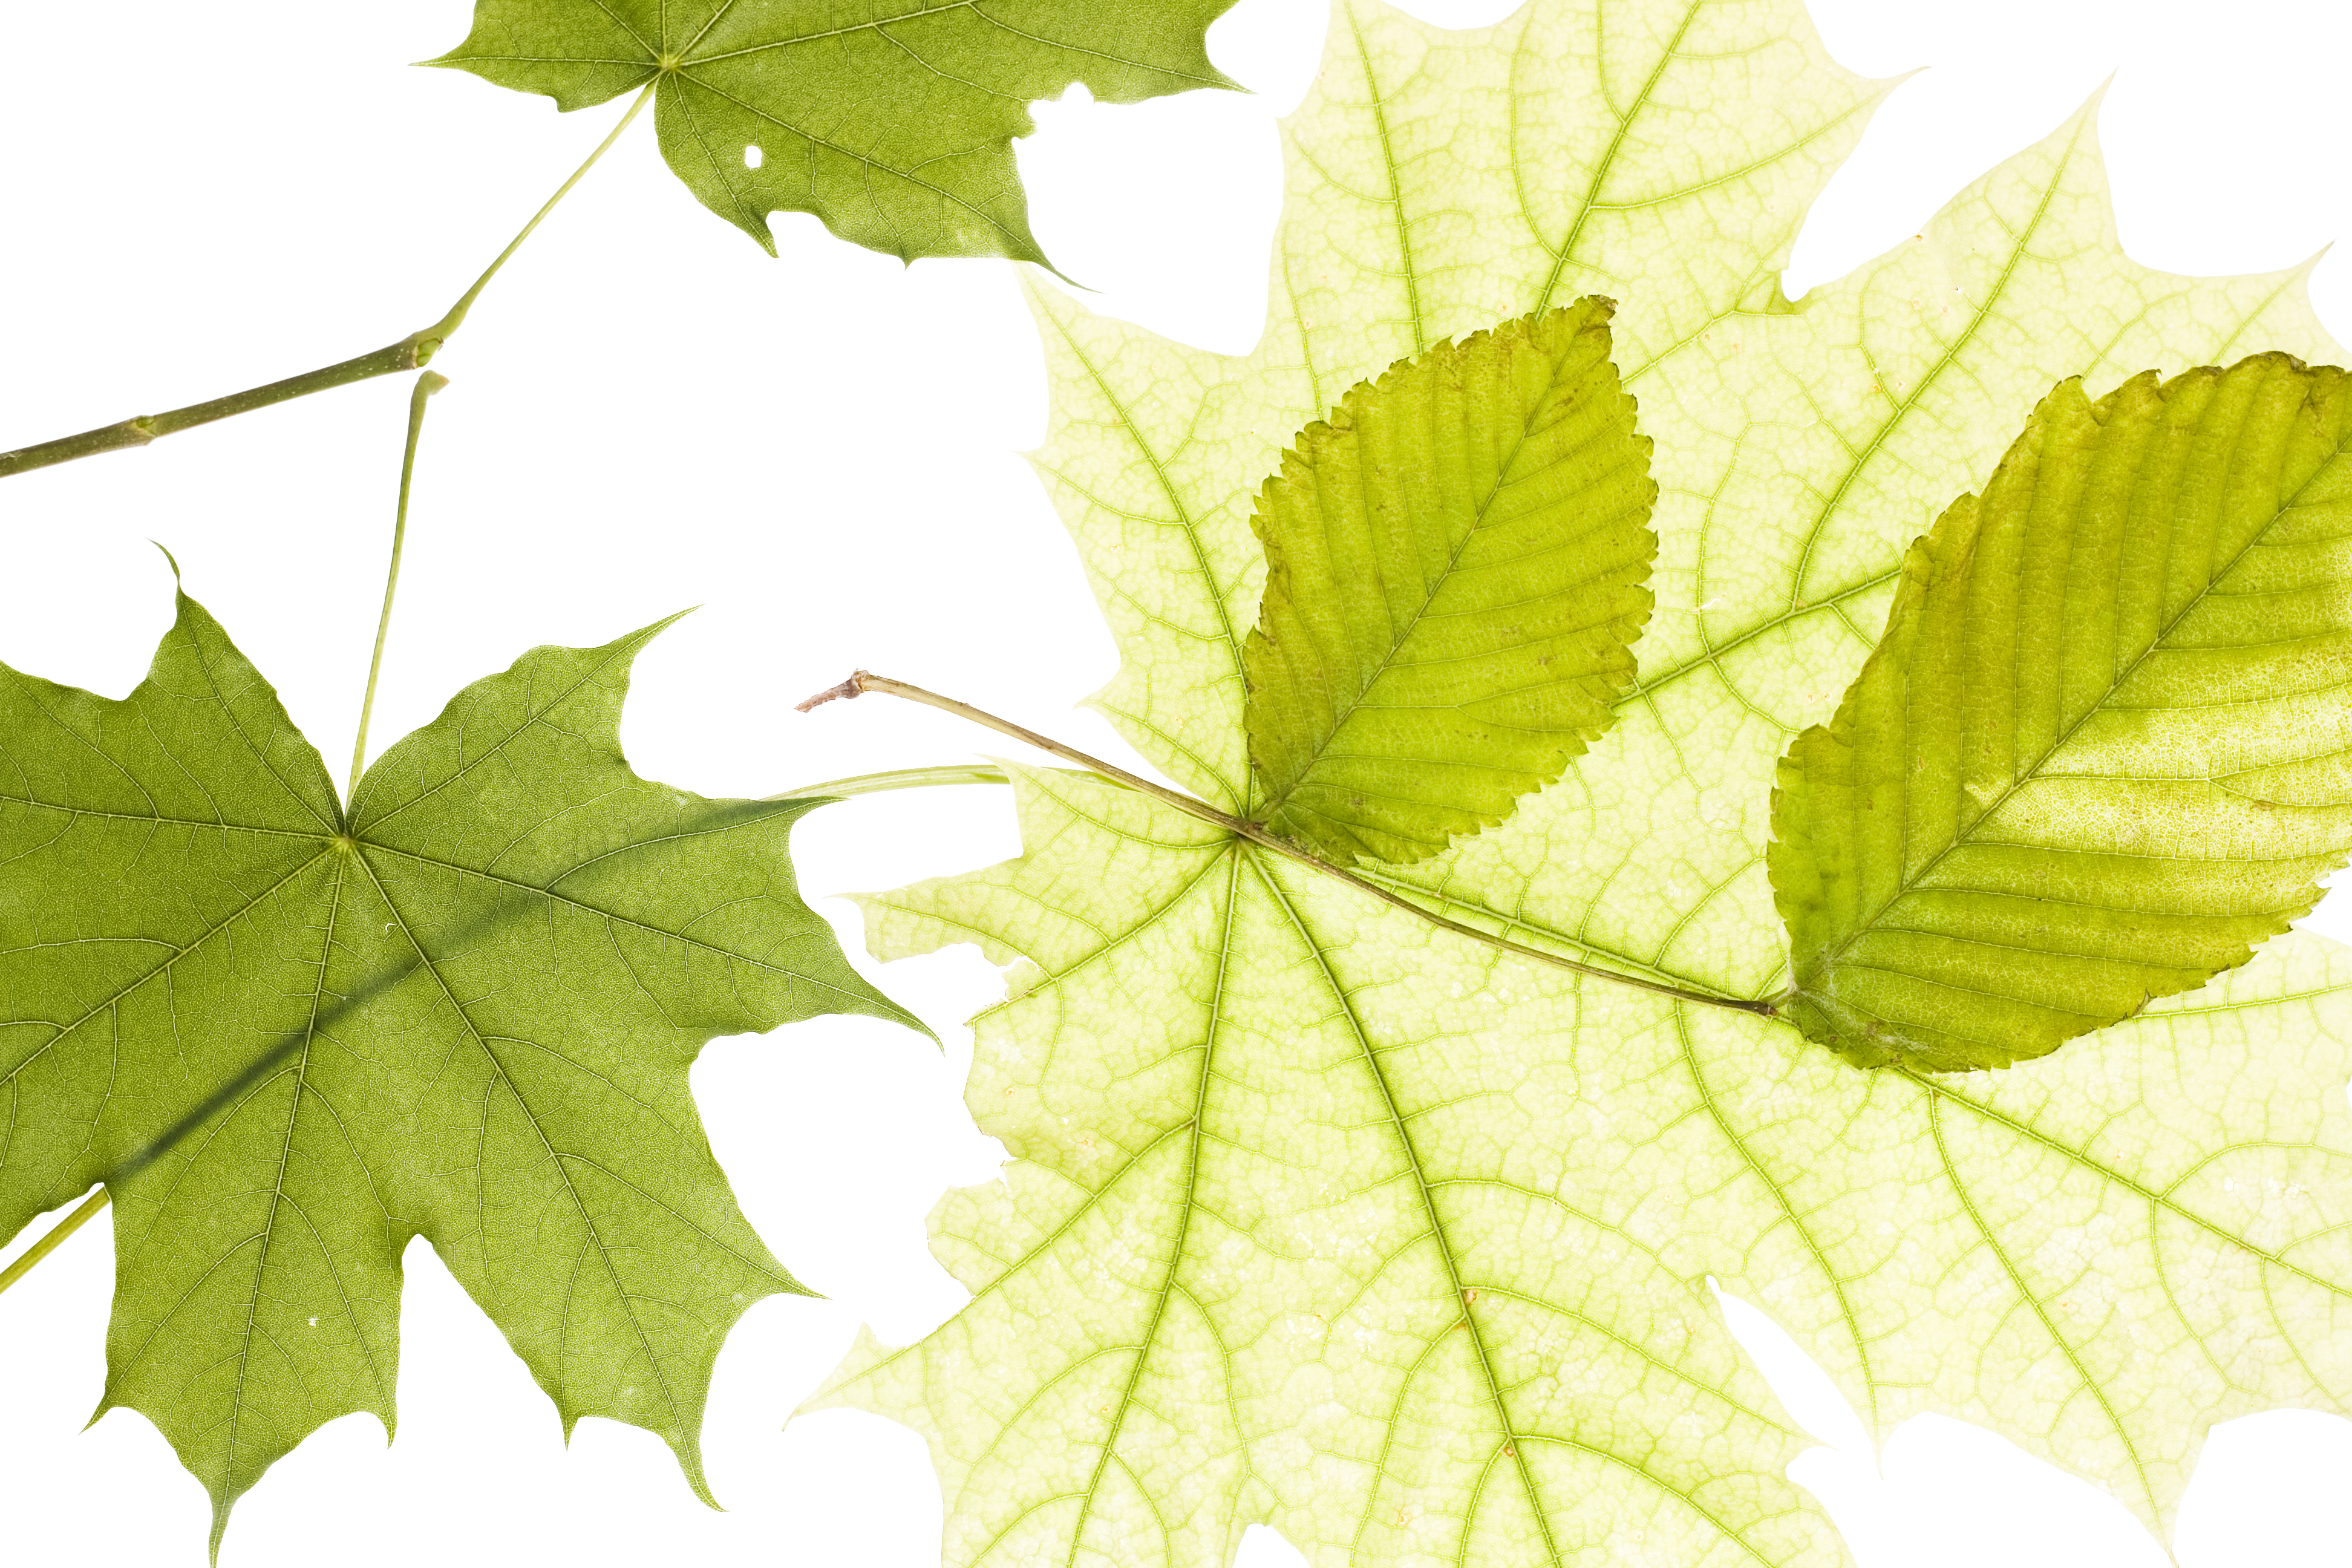 Leaf life. Кленовый листочек на зеленом фоне в ряд. Leaves isolated. Картинка зелёных лтстьевлистьев на белом фоне. Зеленые листья на белом фоне а4.